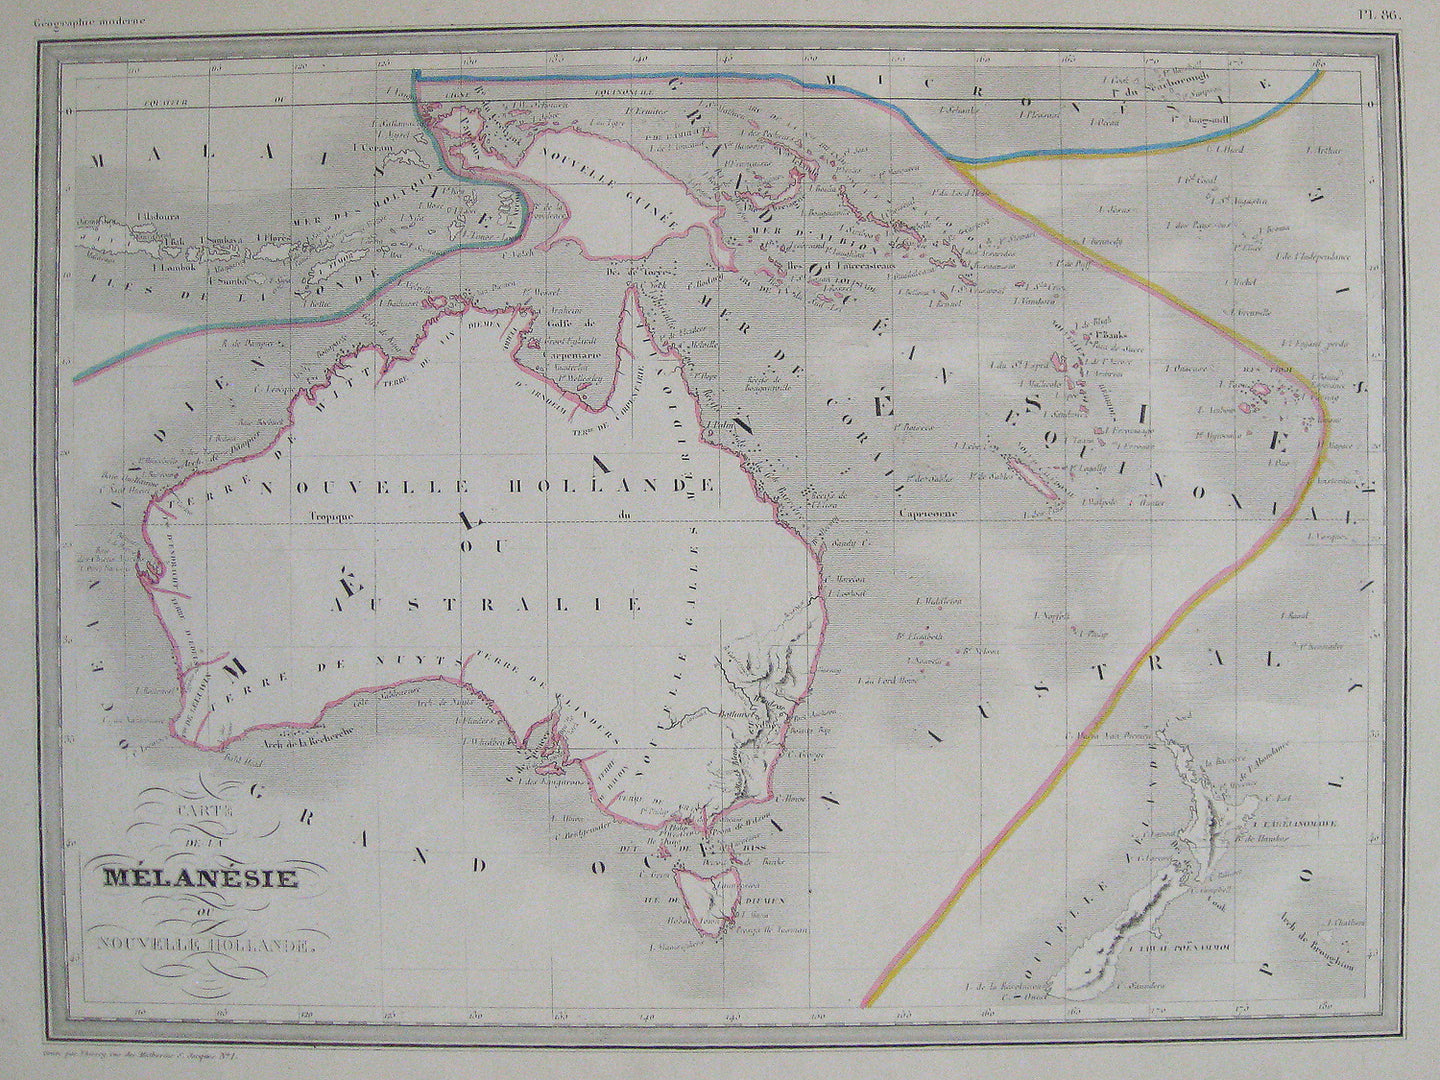 Antique-Hand-Colored-Map-Carte-de-la-Melanesie-ou-Nouvelle-Hollande.-Oceania-Australia-1842-Malte-Brun-Maps-Of-Antiquity